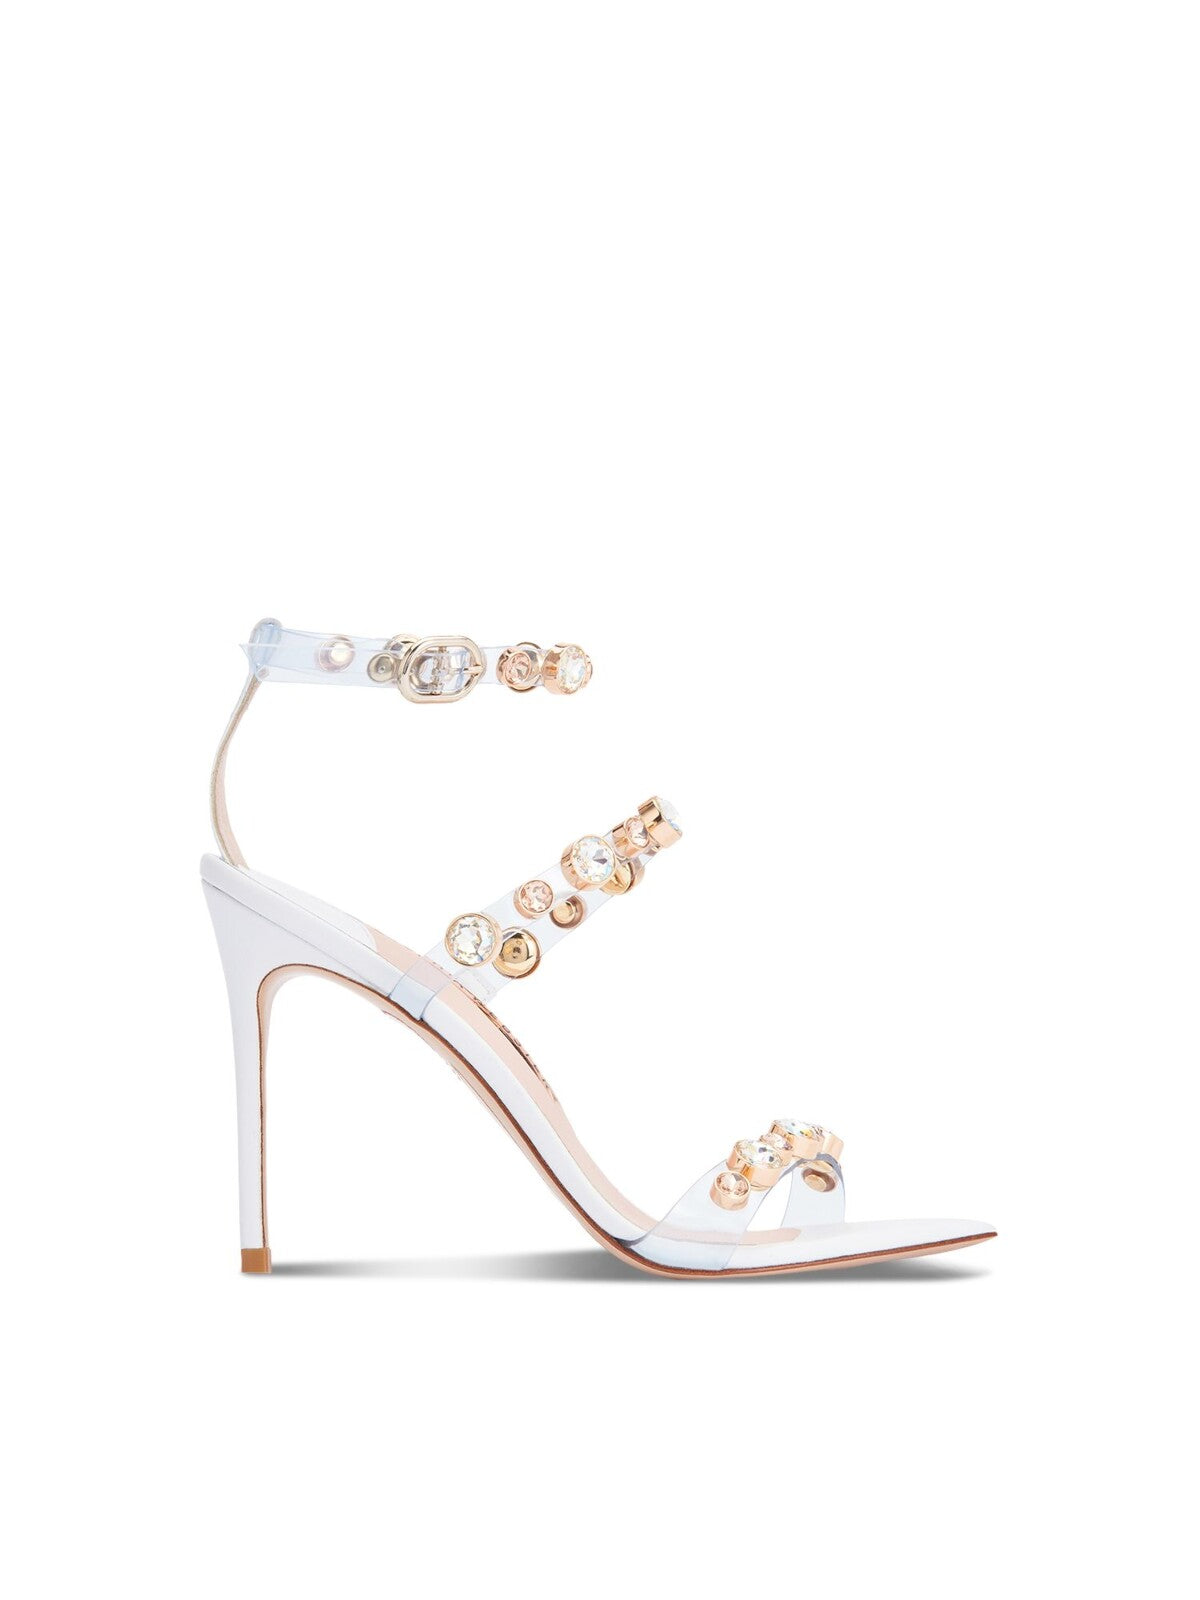 SOPHIA WEBSTER Womens White Embellished Adjustable Rosalind Square Toe Stiletto Buckle Dress Heels Shoes 37